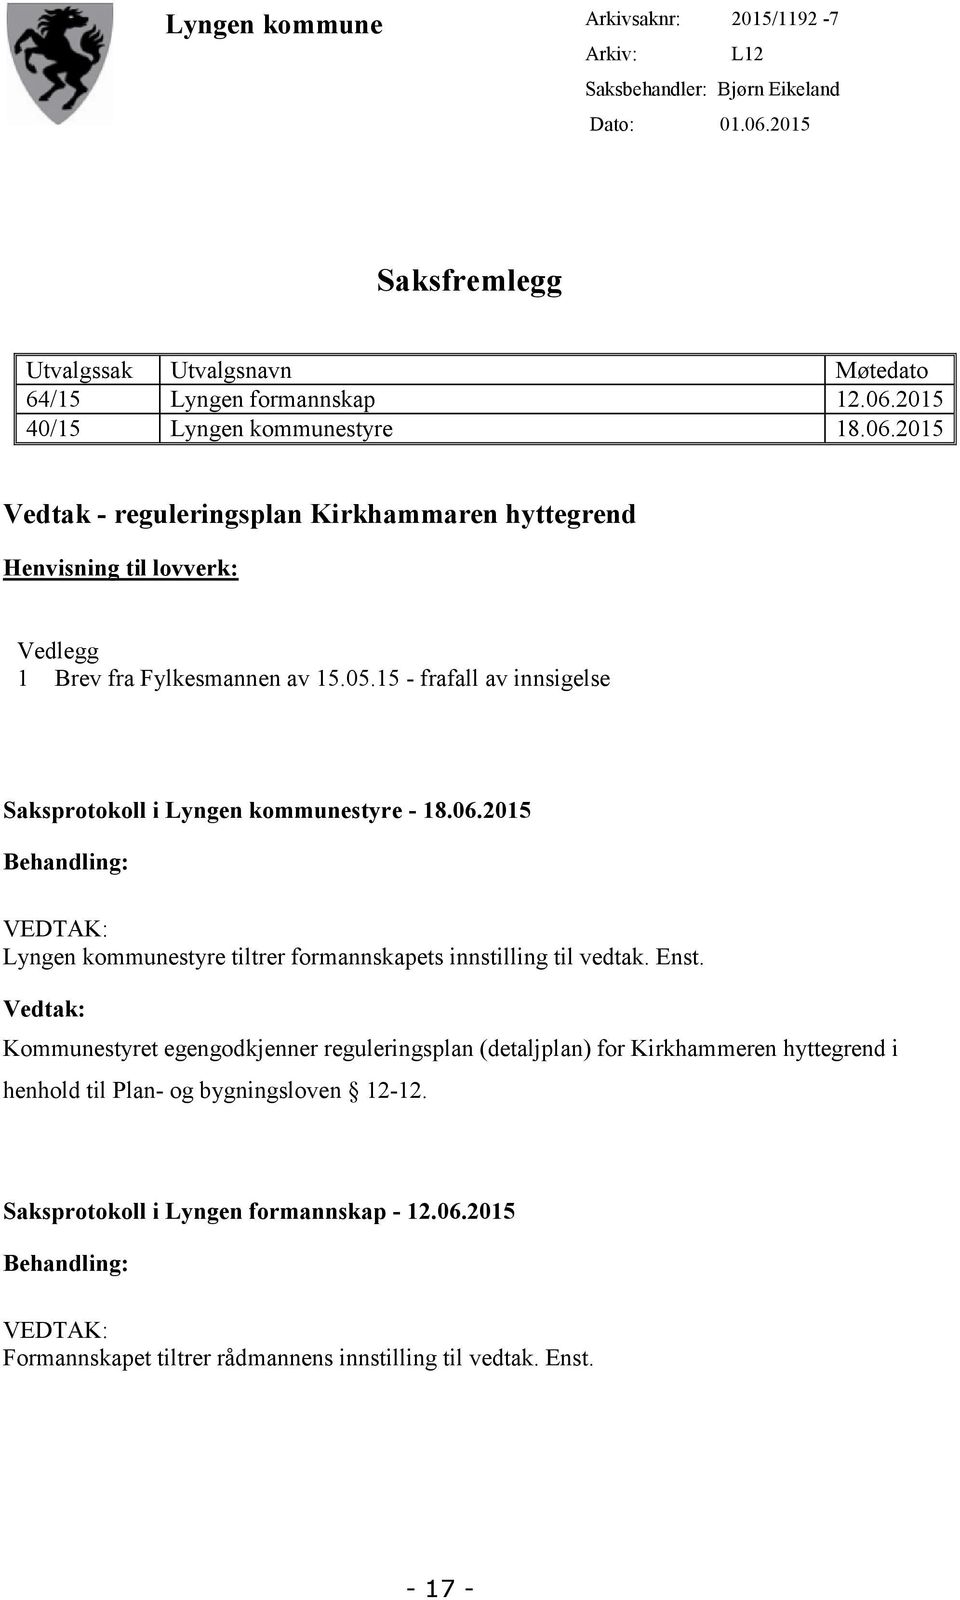 Enst. Vedtak: Kommunestyret egengodkjenner reguleringsplan (detaljplan) for Kirkhammeren hyttegrend i henhold til Plan- og bygningsloven 12-12. Saksprotokoll i Lyngen formannskap - 12.06.